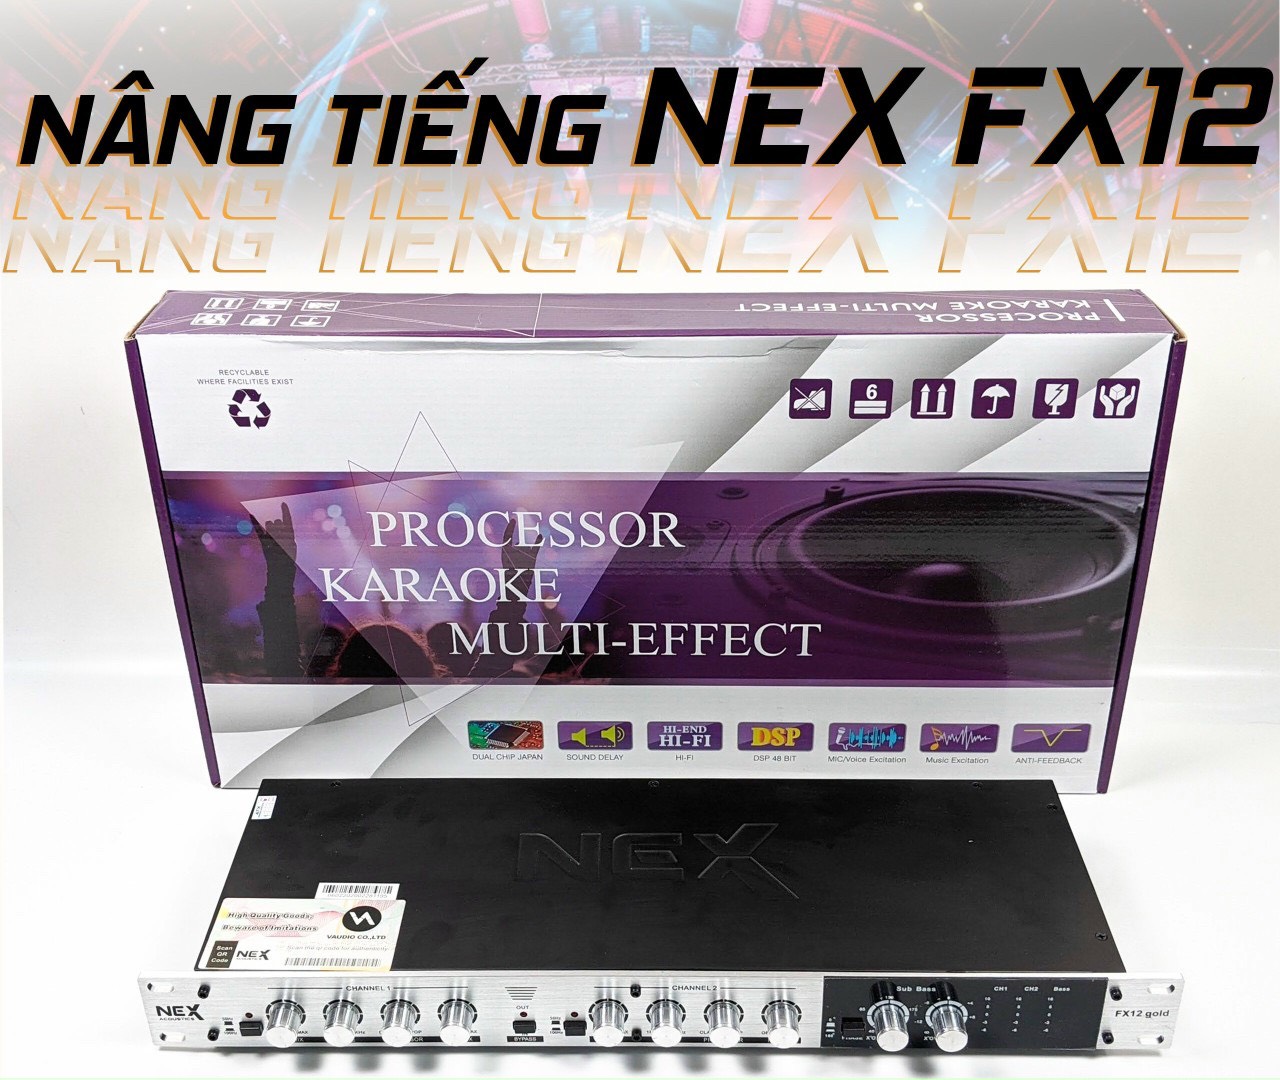 Nâng tiếng Nex Acoustic FX12 Gold - Thiết Kế Kim Loại Cao Cấp Đèn Led Nổi Bật Cải thiện âm thanh hiệu quả, phân tần số tiếng siêu trầm riêng cho loa bass sub với ngõ out riêng, rất có lợi cho dàn amply karaoke